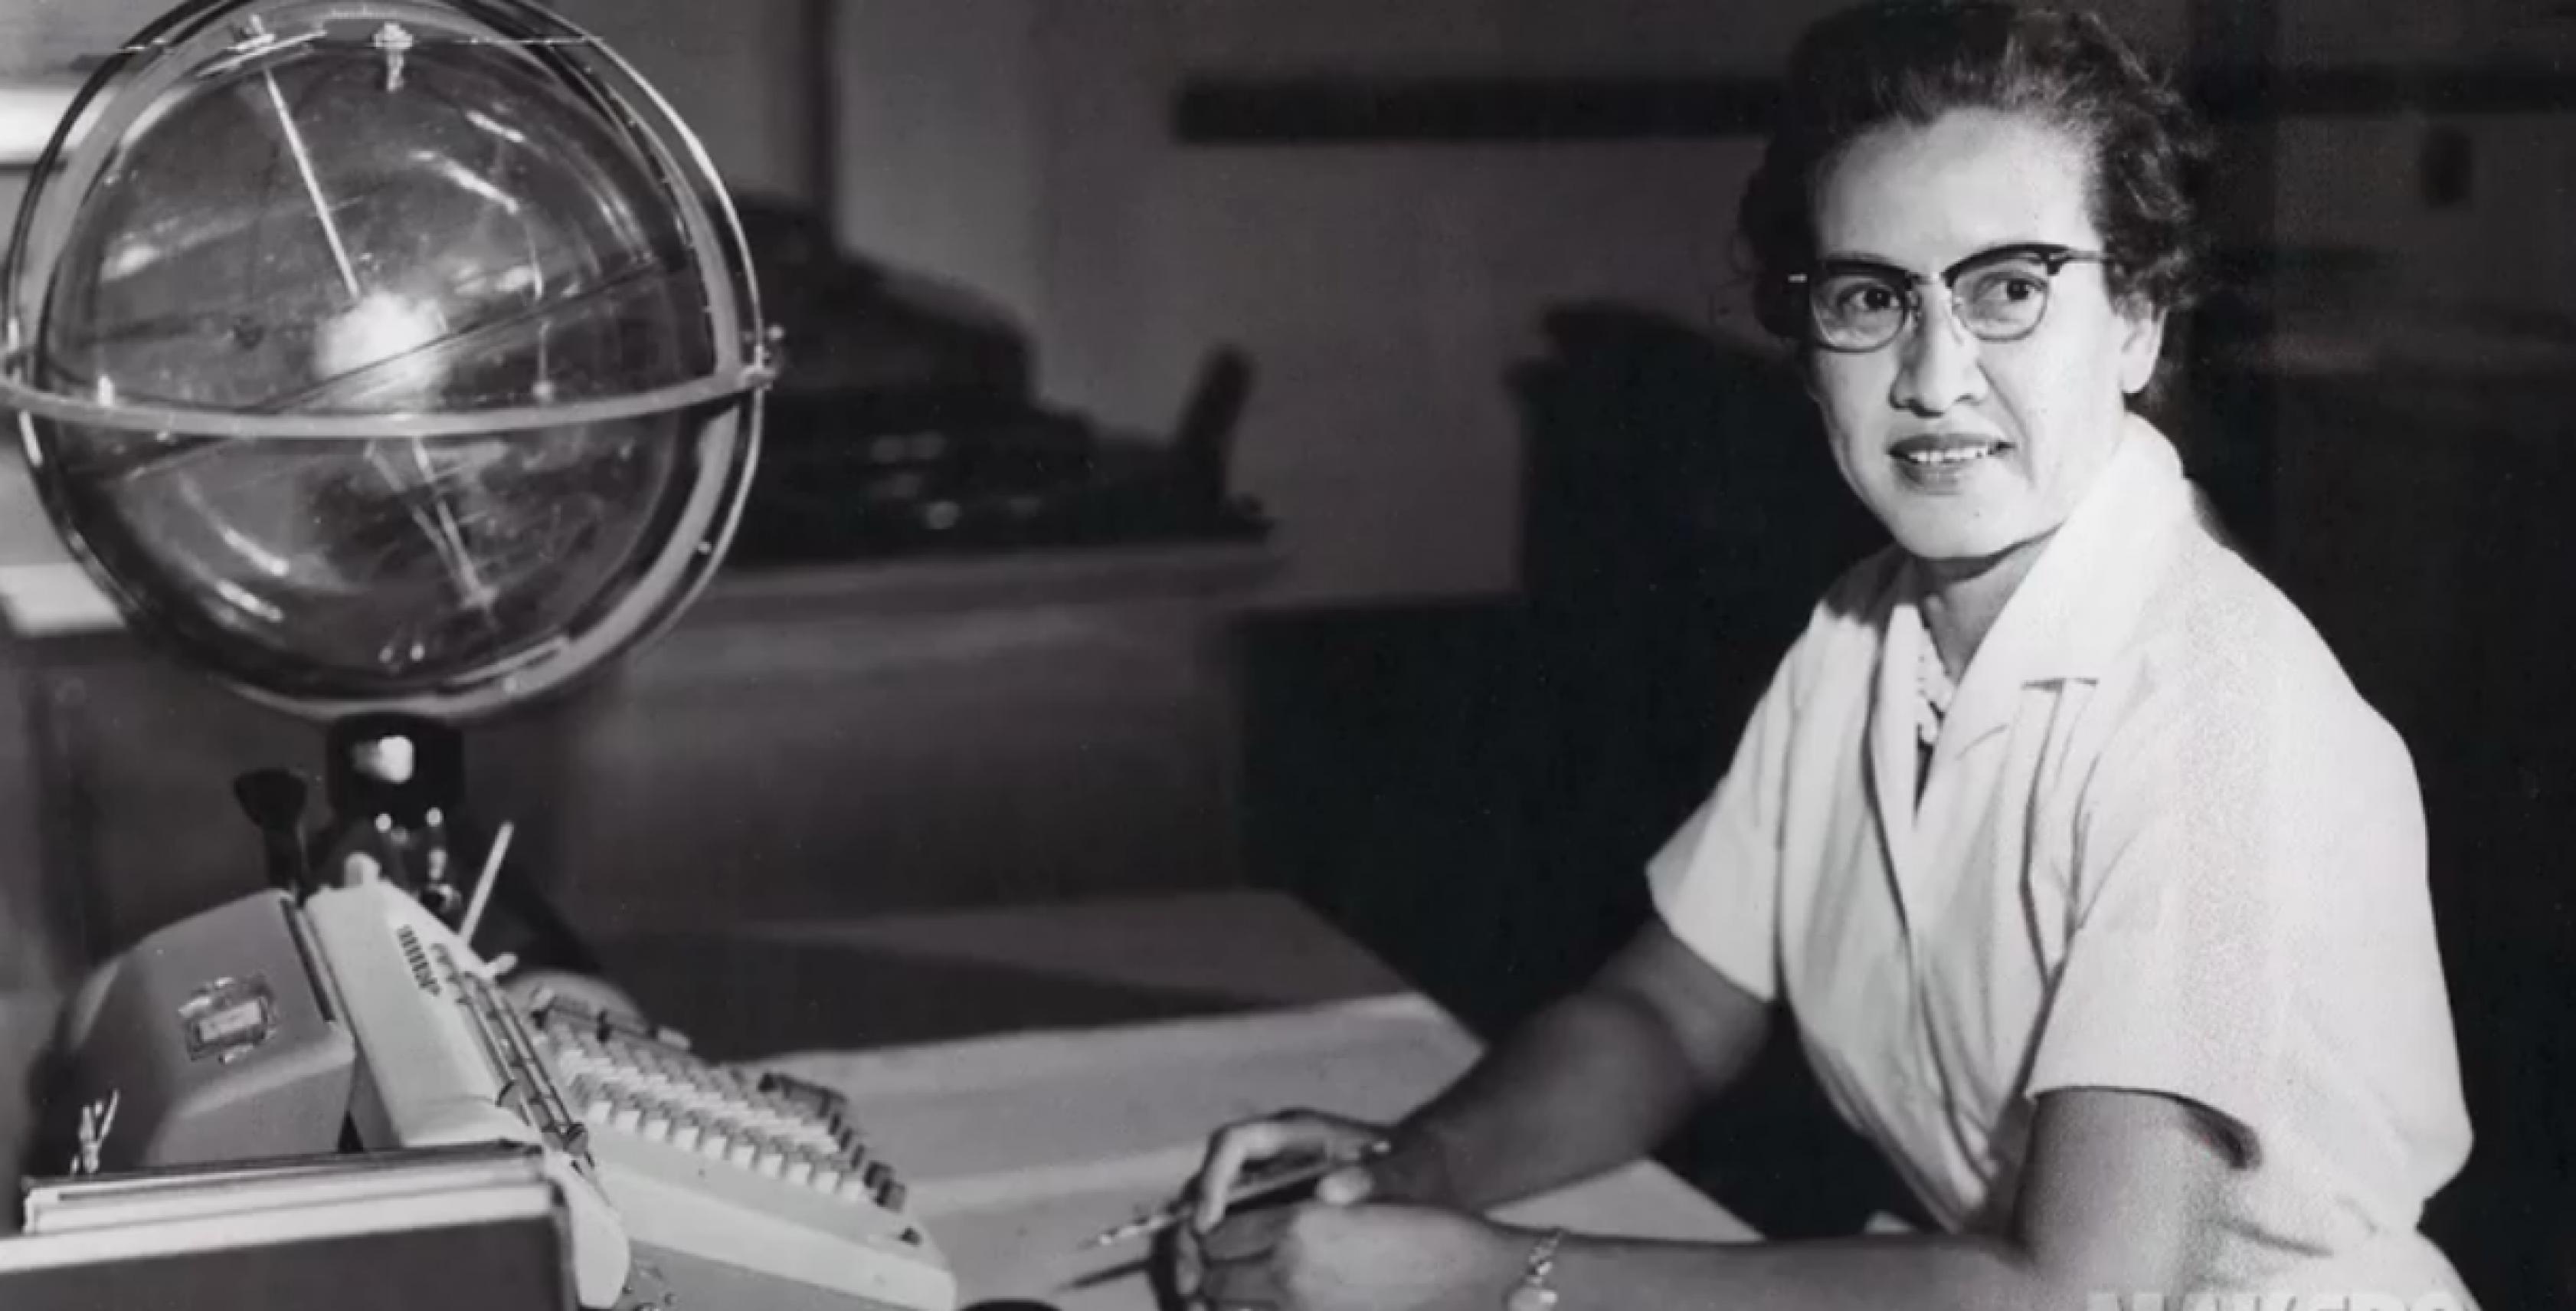 Rechts im Bild sitzt eine Frau am Schreibtisch; sie trägt einen weißen, kurzärmeligen Kittel und eine Brille; vor ihr auf dem Schreibtisch, im Bild links, steht eine Rechenmaschine und im Hintergrund ein Globus.